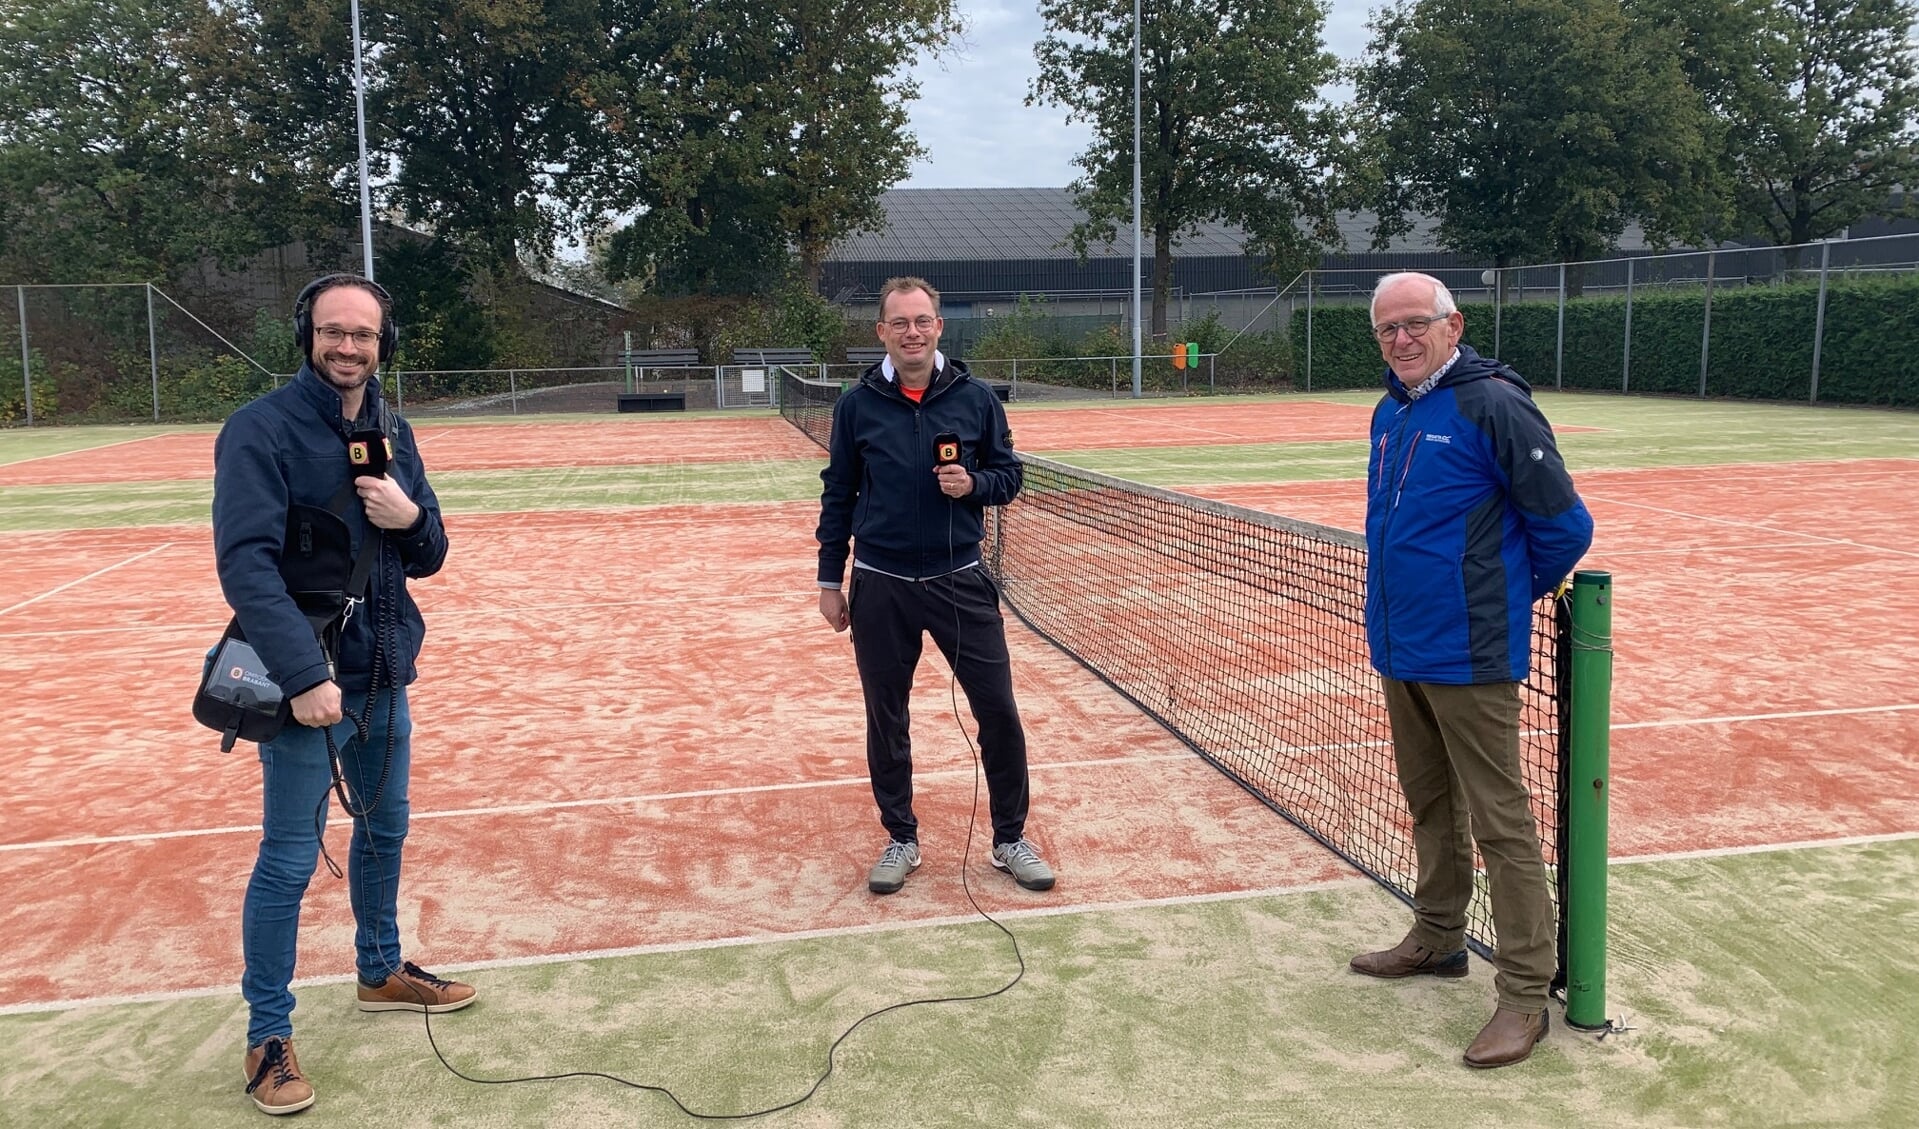 Bestuursleden Ralf Bollen (Jeugd, l) en Jan van Gorp (Parkzaken) met de verslaggever